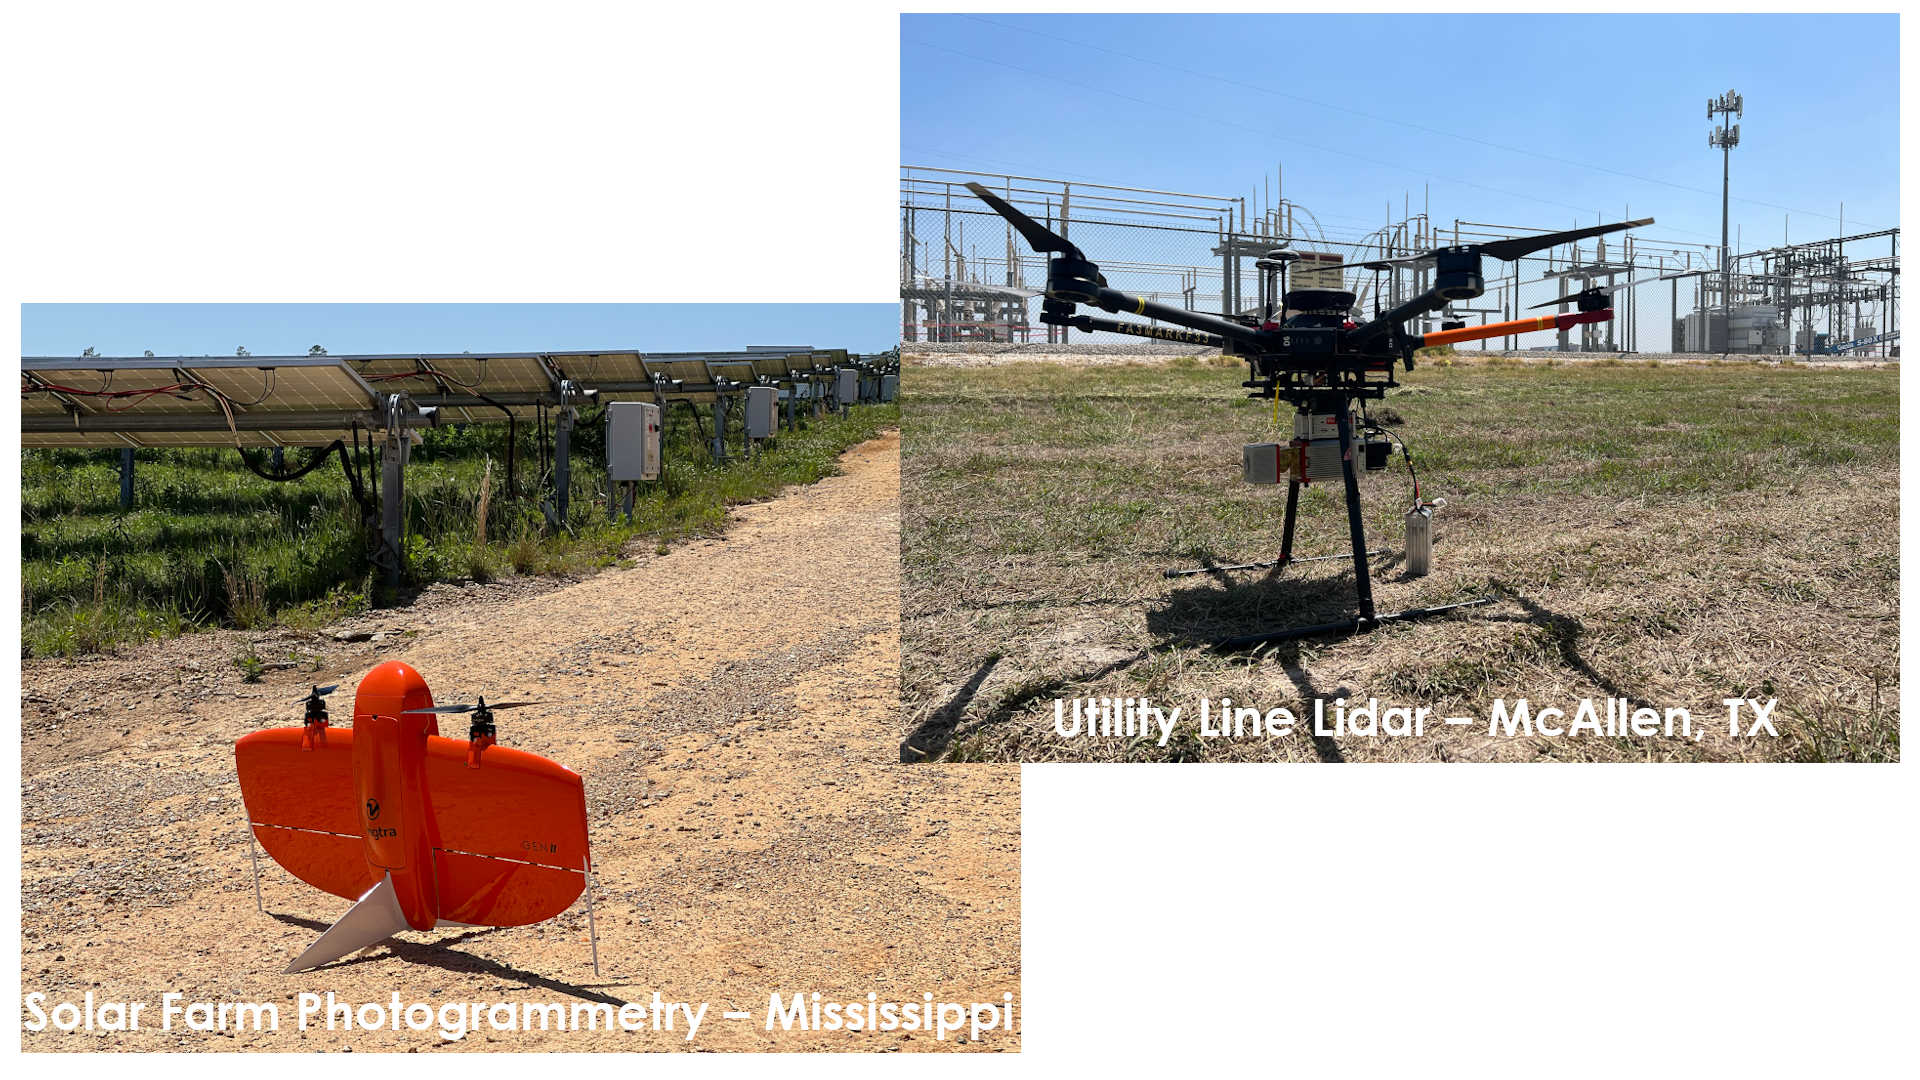 Solar Farm Photogrammetry & Utility Line Lidar